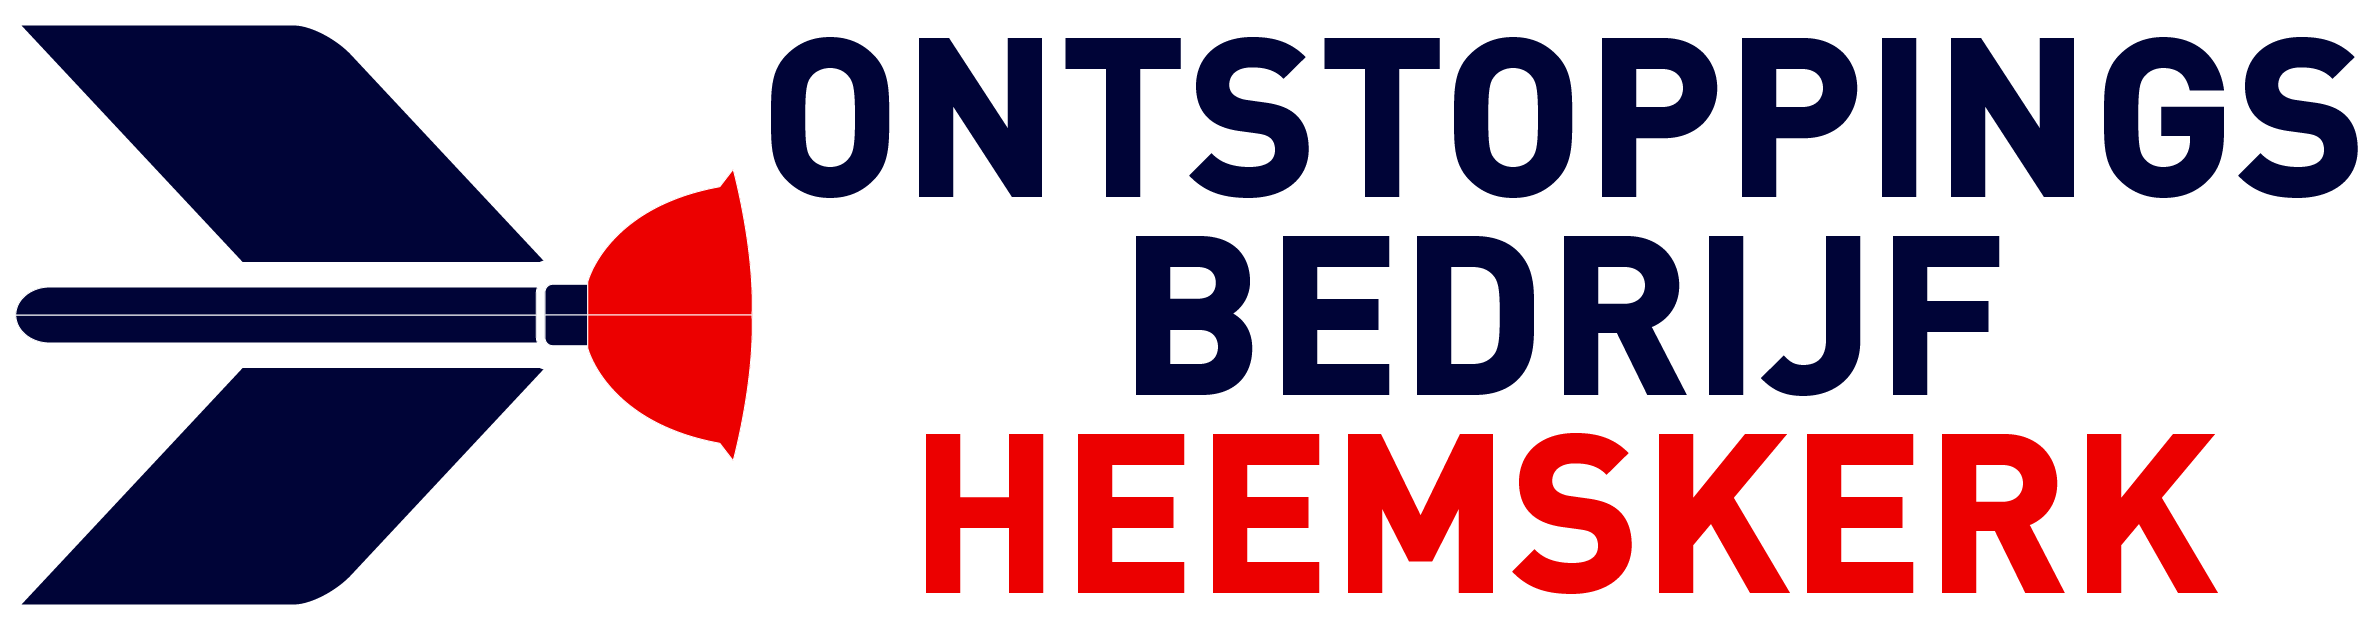 Ontstoppingsbedrijf Heemskerk logo